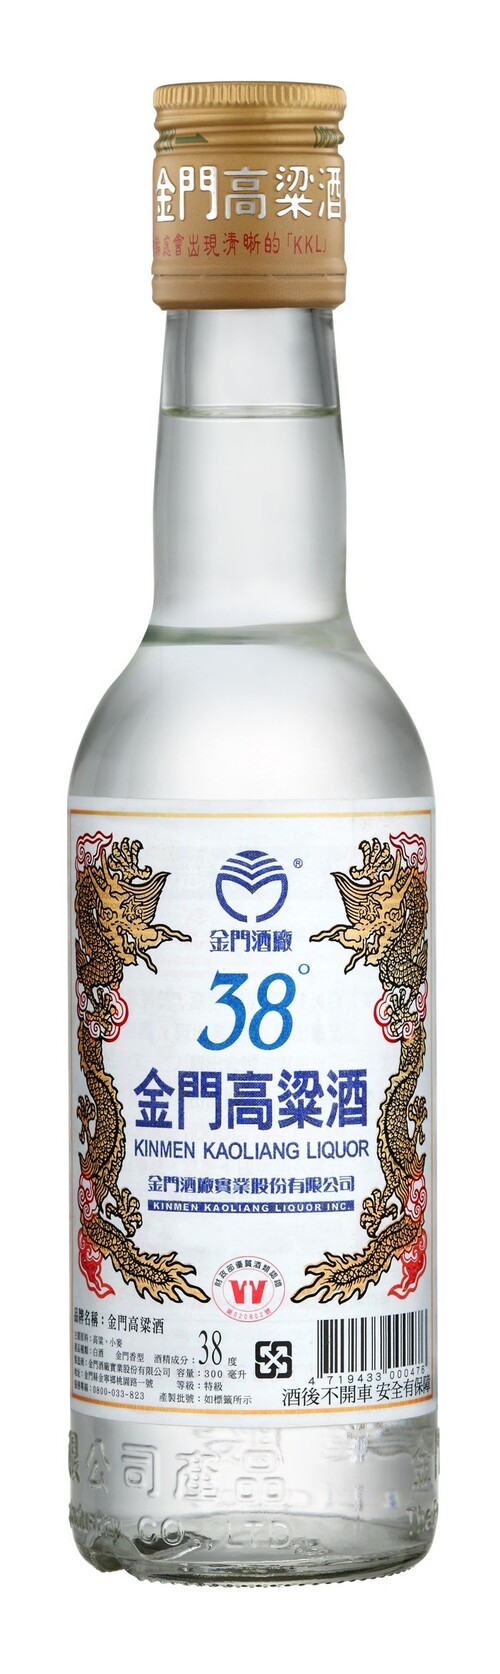 38度金門高粱酒300ml | 鵬馳有限公司